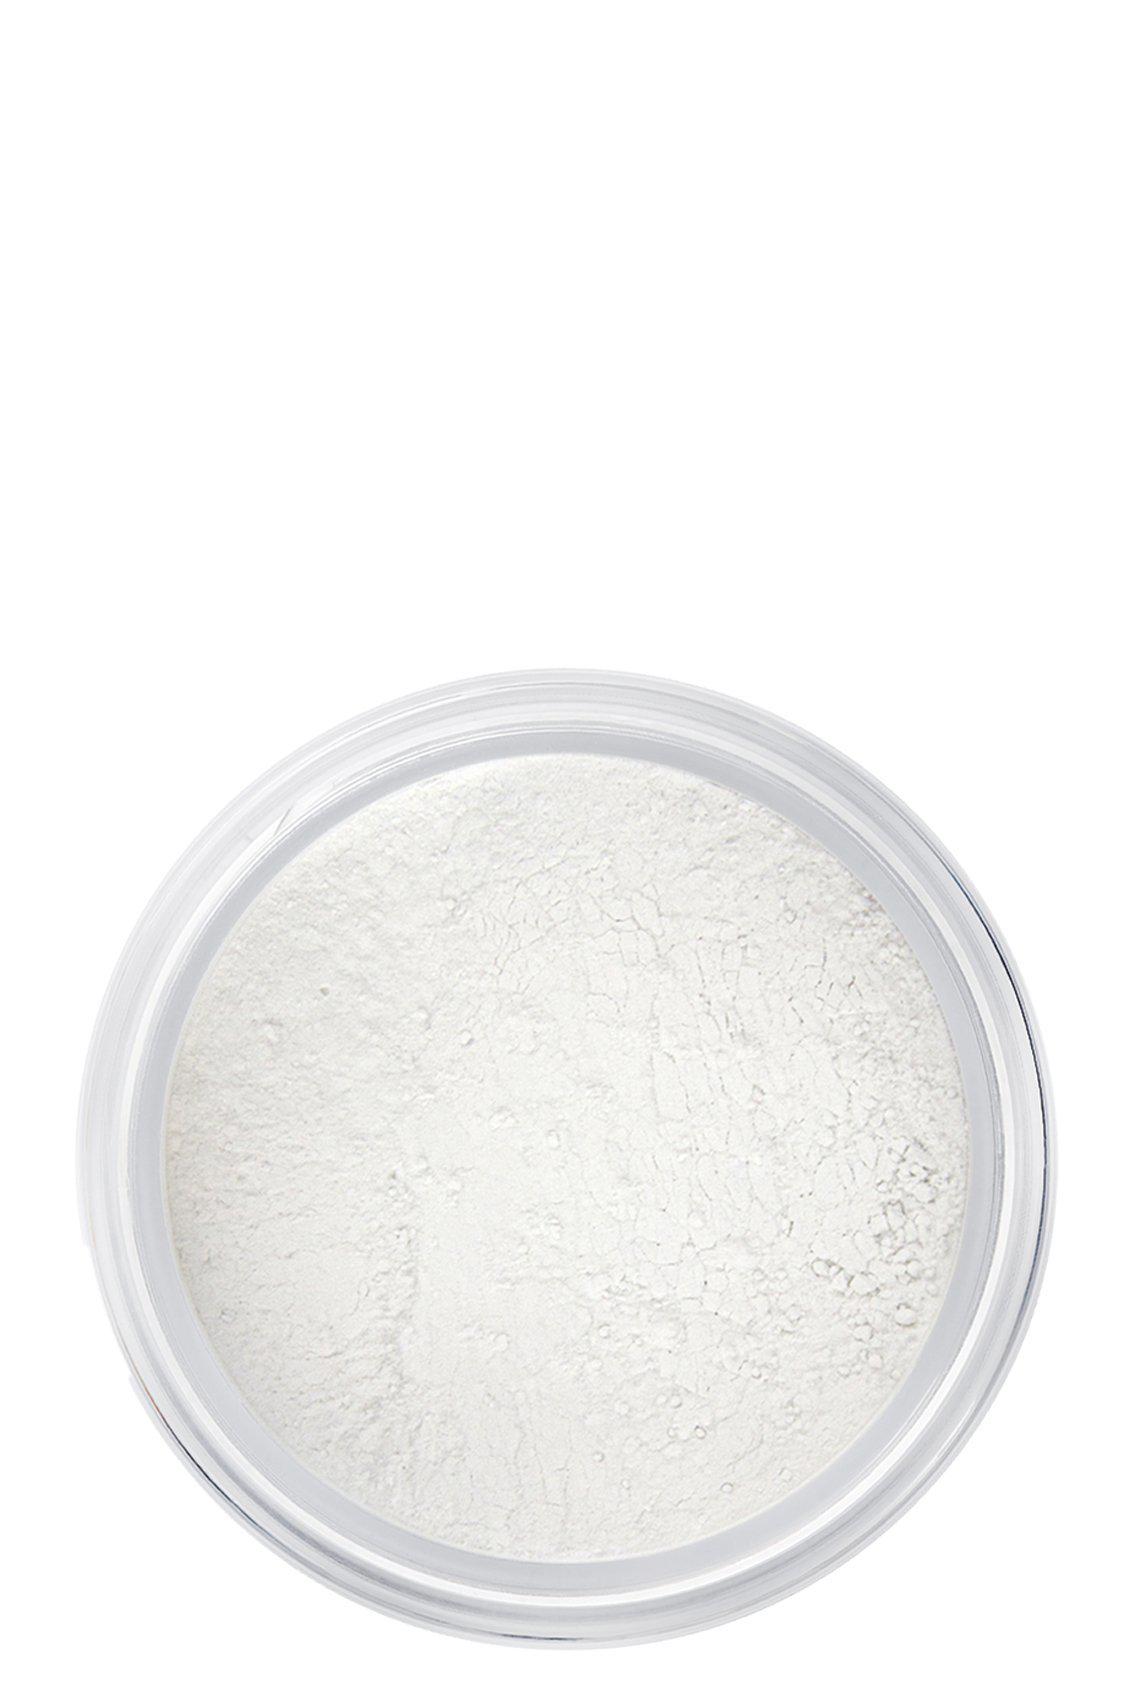 Indisponible : Silk finish powder Unavailable: Silk finish powder - Manasi 7